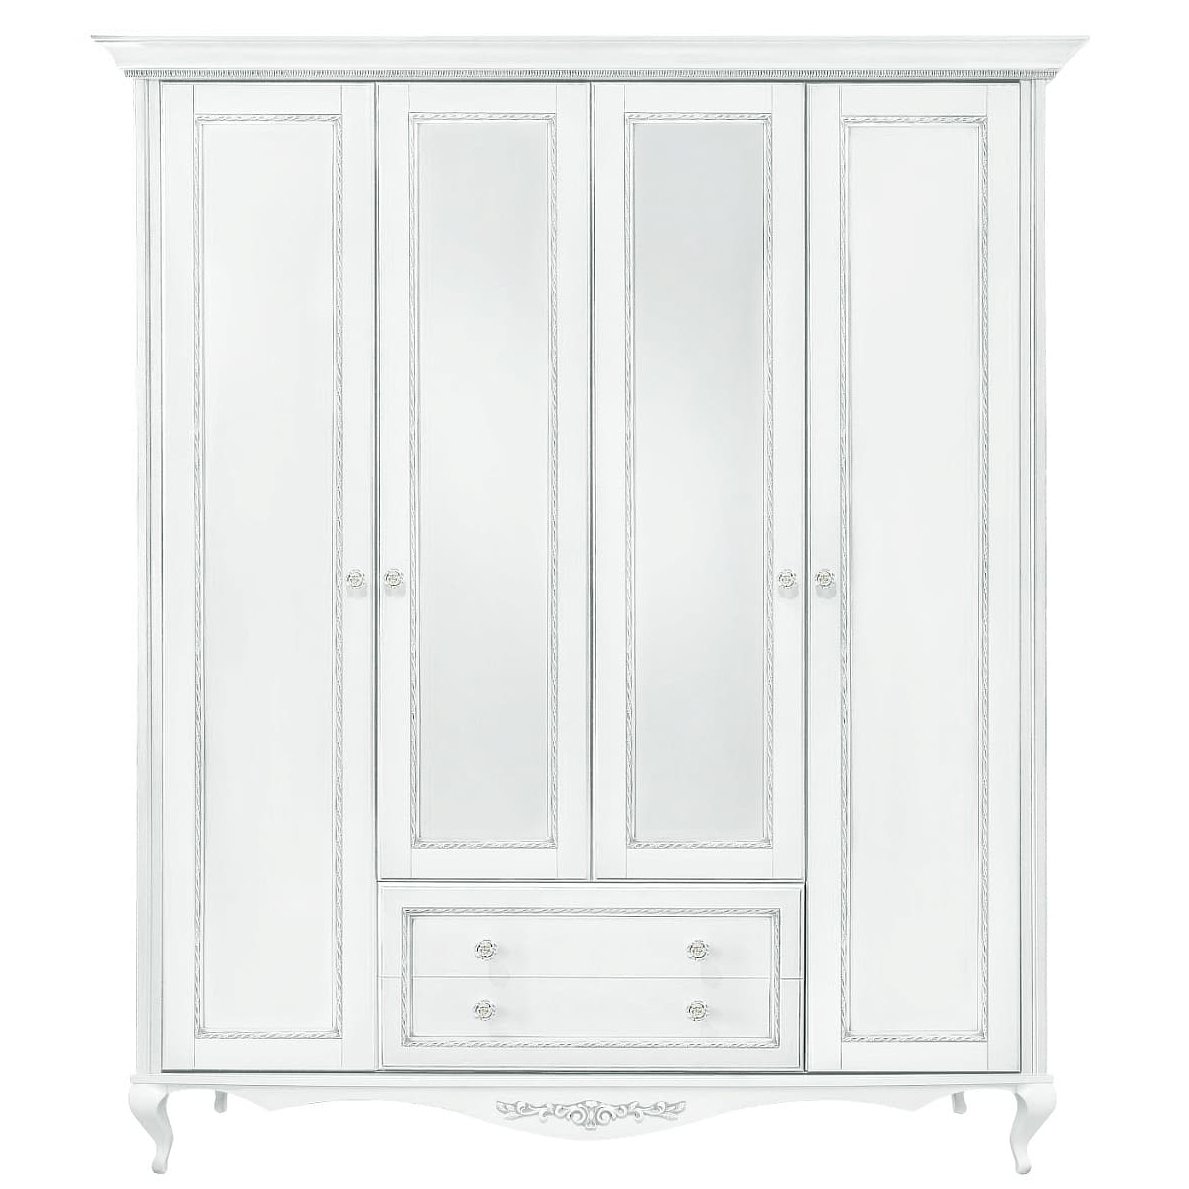 Шкаф платяной Timber Неаполь, 4-х дверный с зеркалами 204x65x227 см, цвет: белый с серебром (Т-524/BA)Т-524